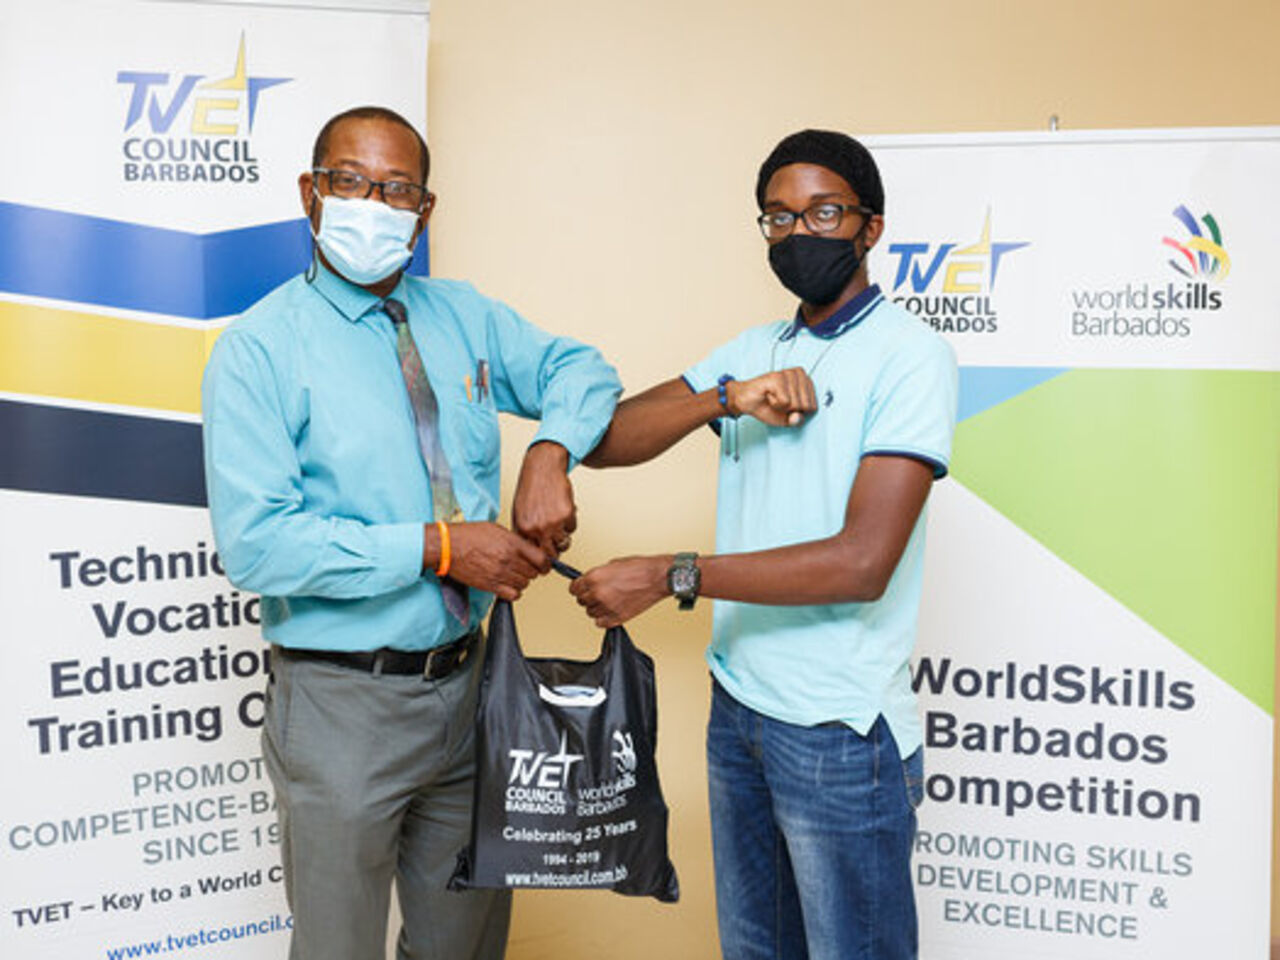 学生获得奖品成功完成Worldskills Barbados初级技能营。